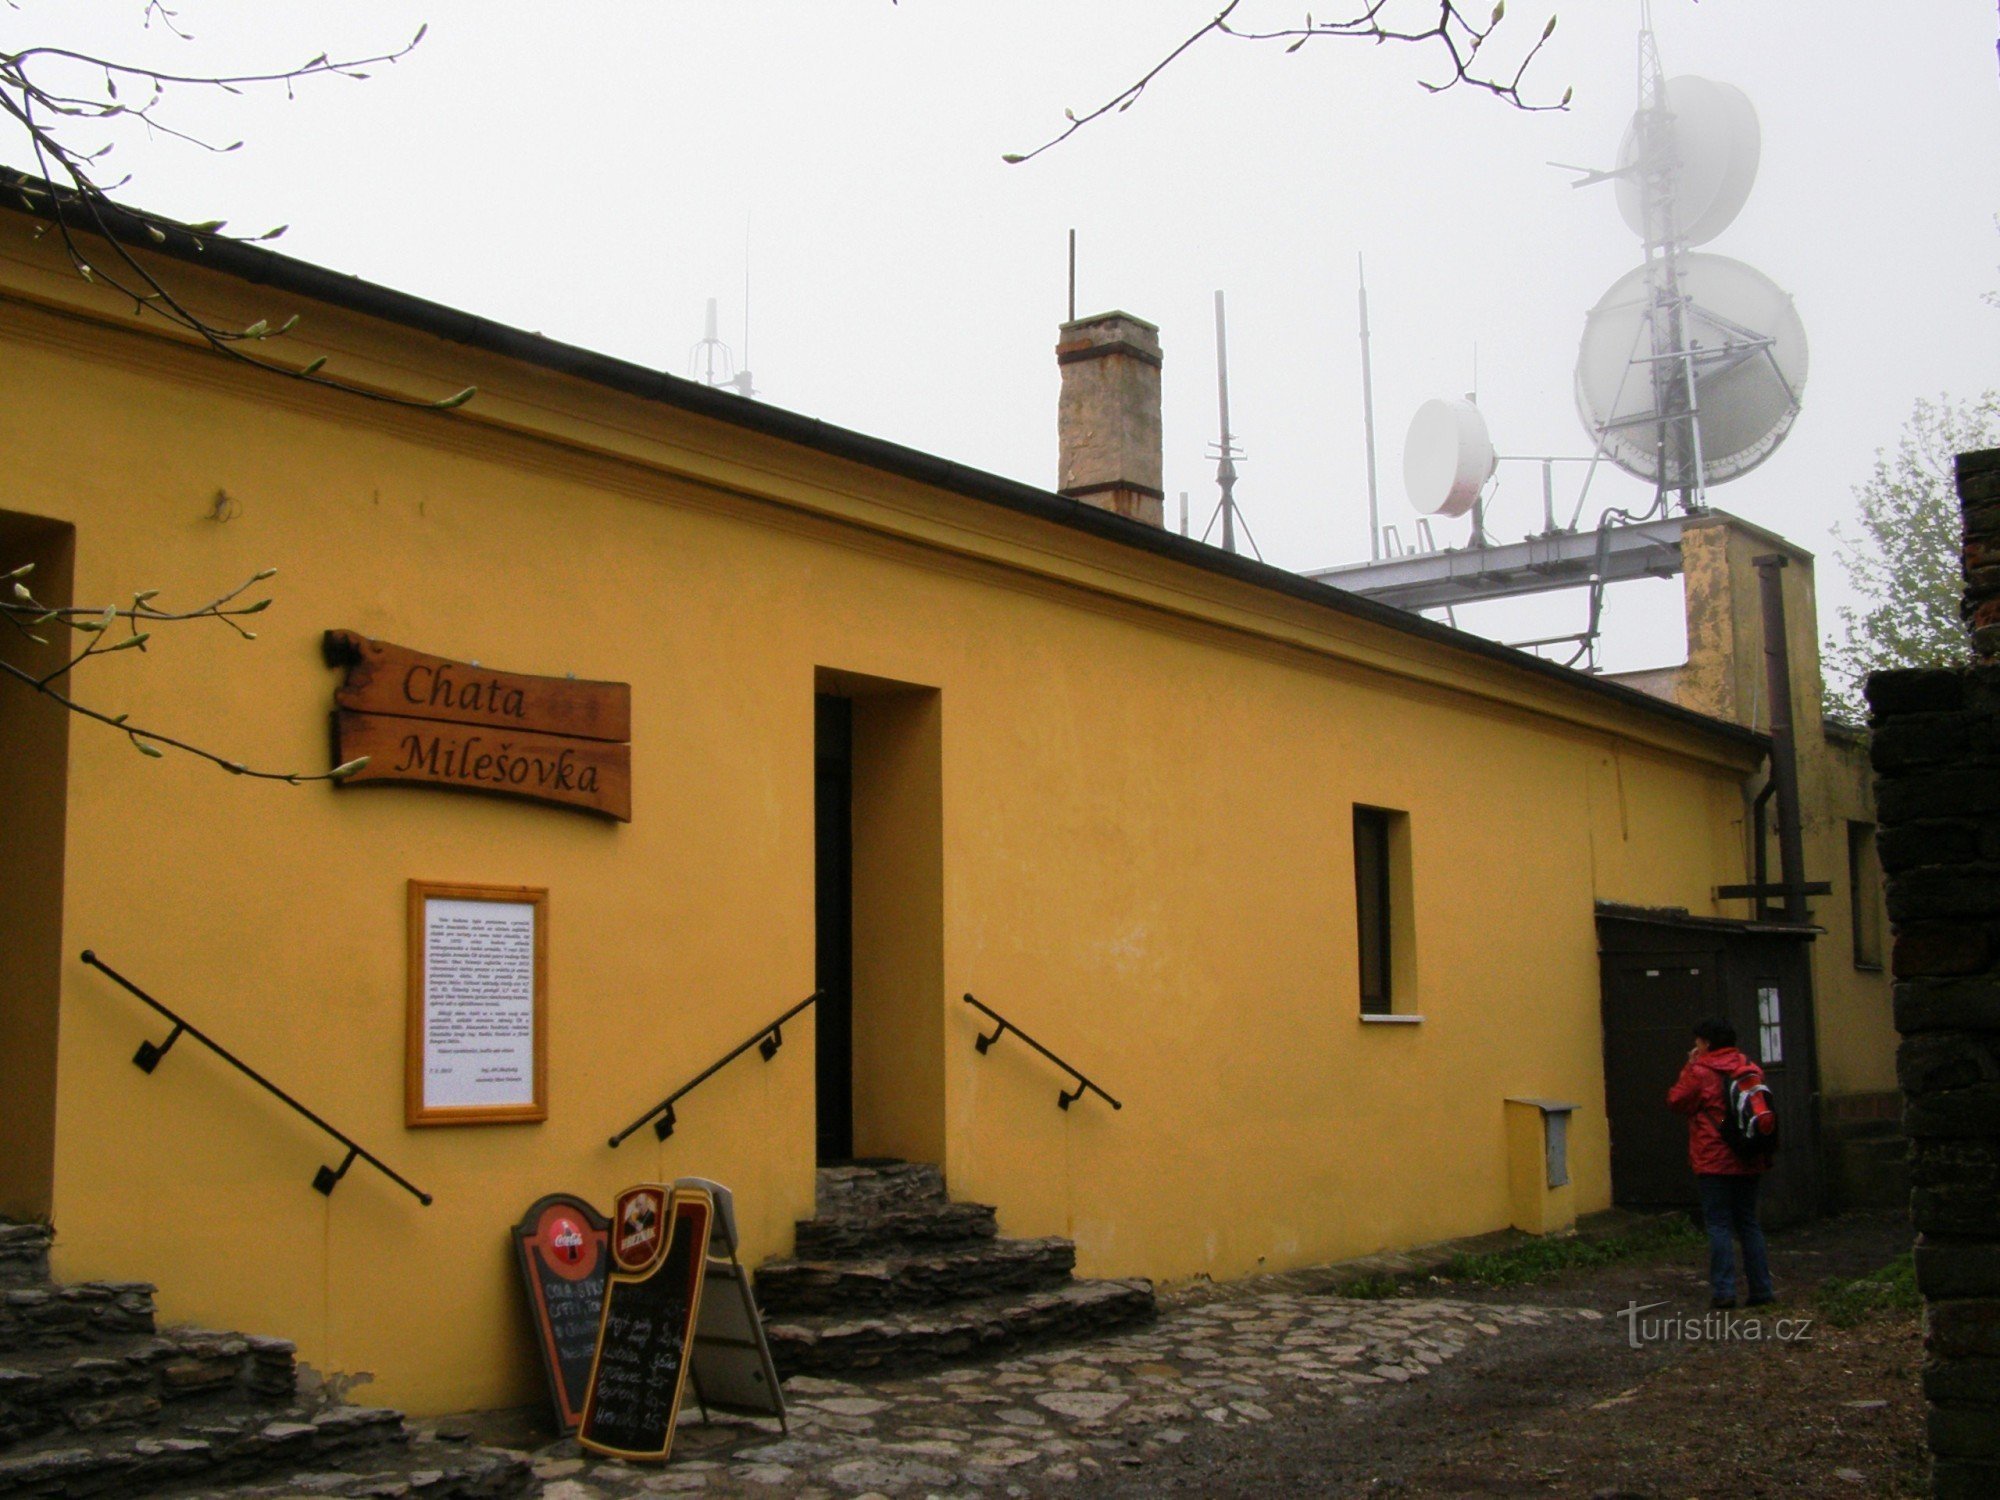 Εκτός από τον μπουφέ, υπάρχει επίσης ένα εστιατόριο που άνοιξε πρόσφατα στη Milešovka